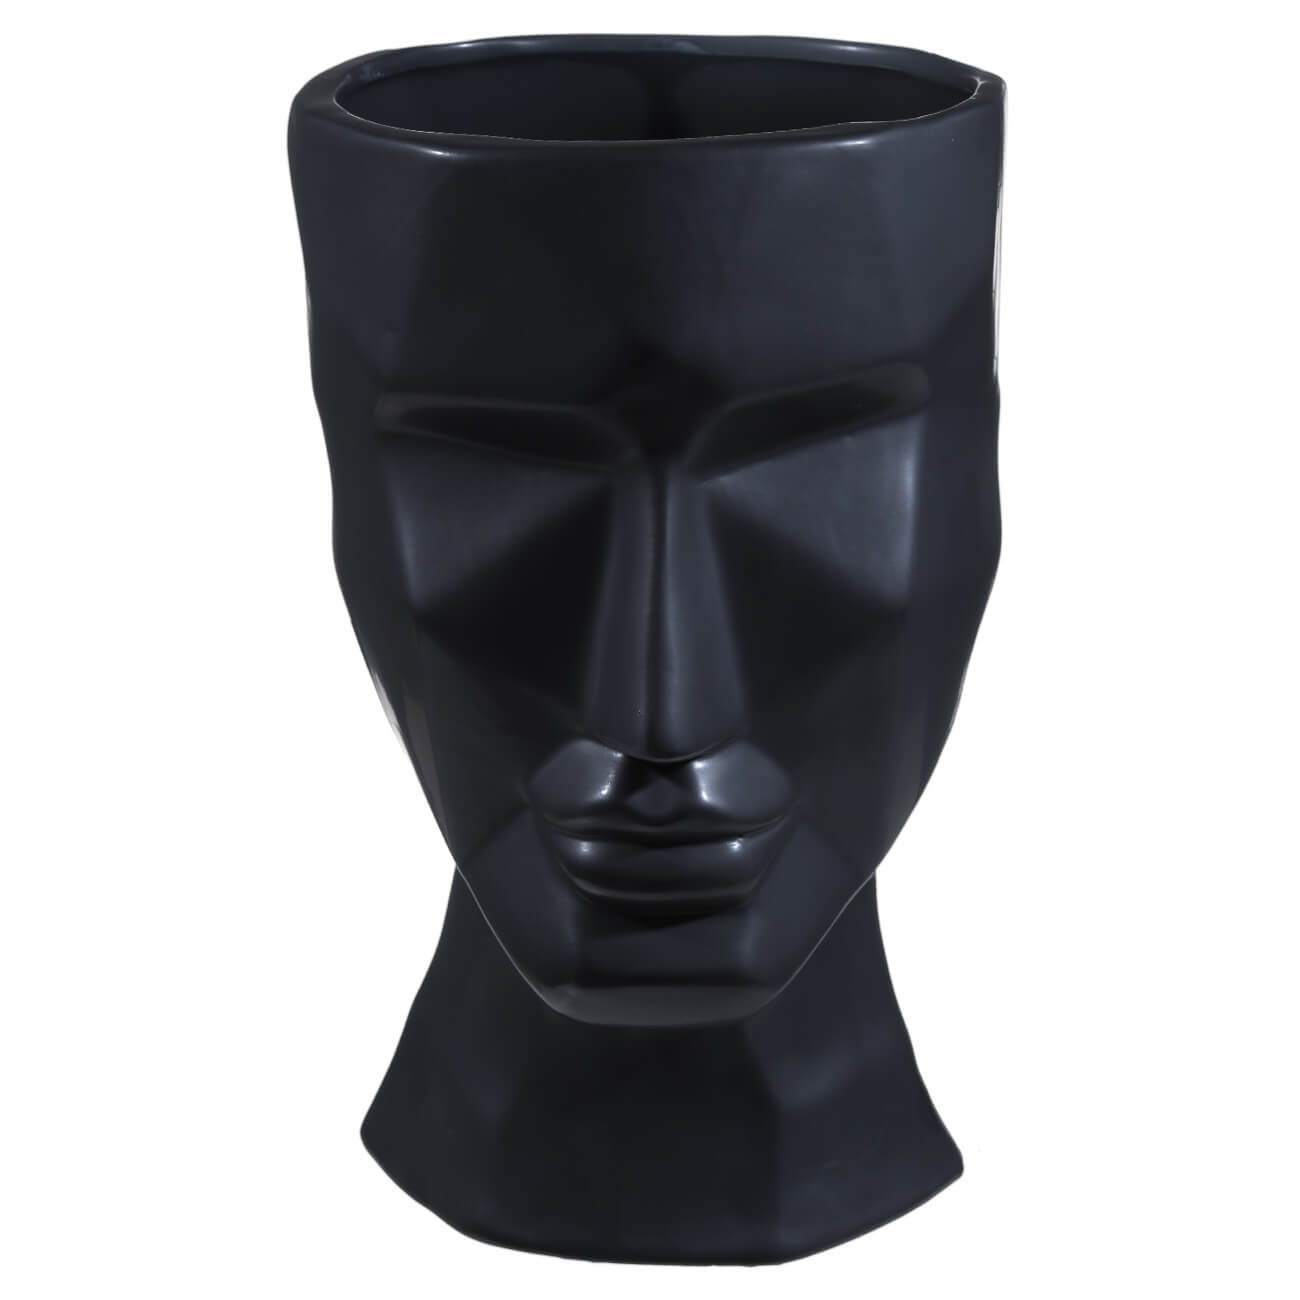 Ваза для цветов, 29 см, декоративная, керамика, черная, Графичное лицо, Face изображение № 1